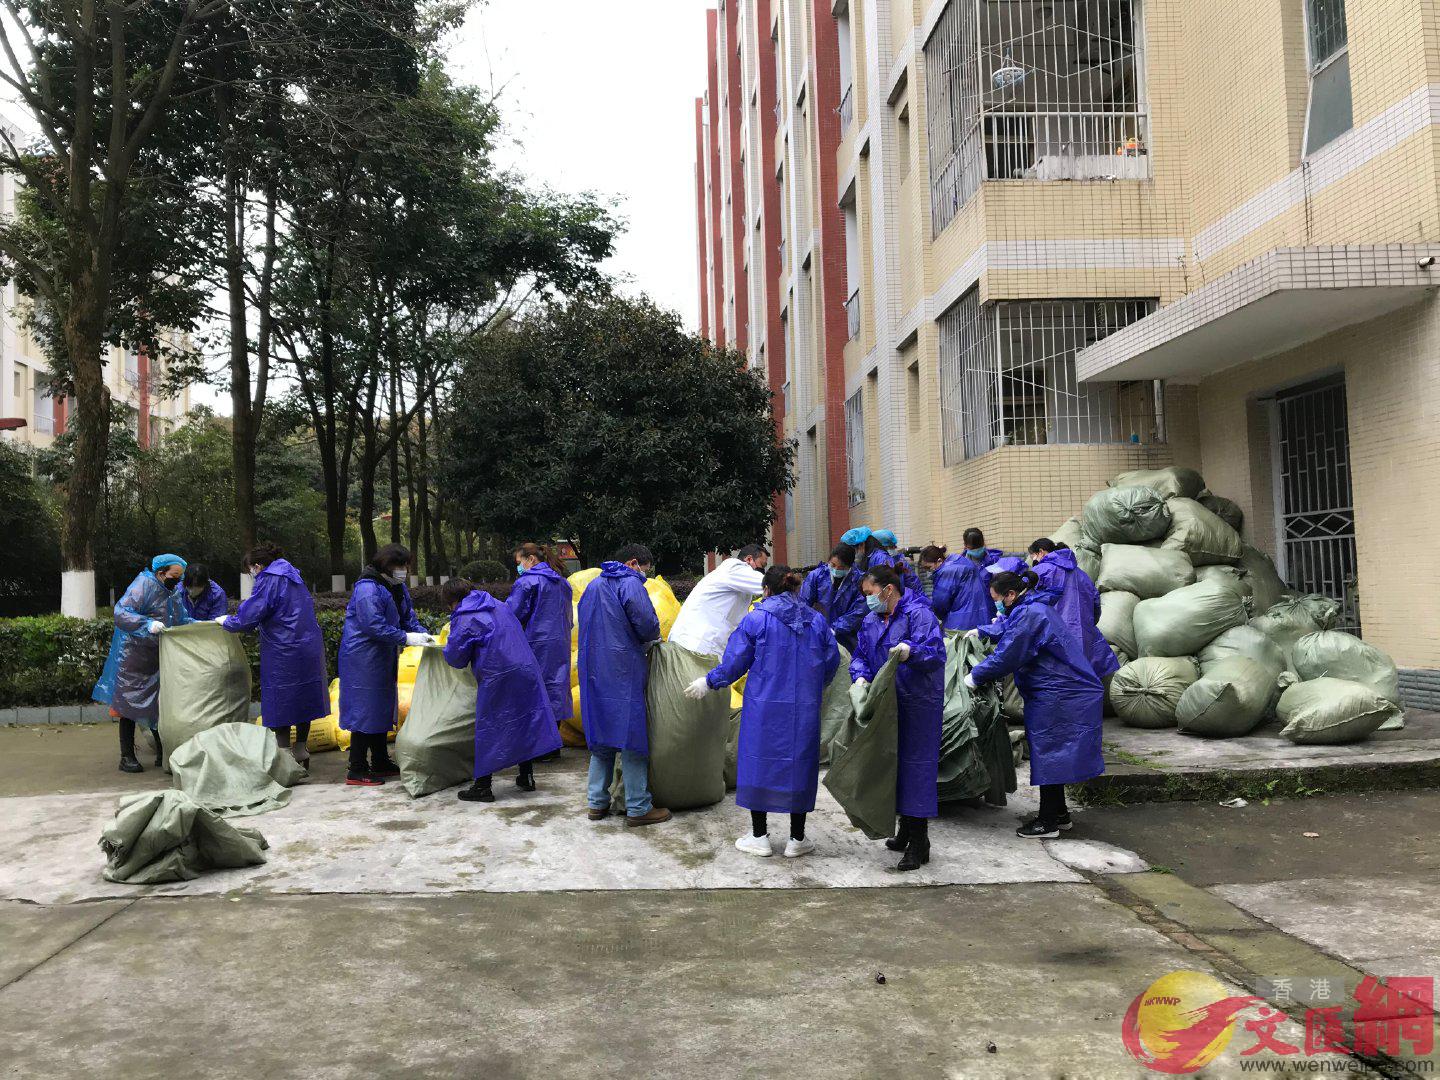 3月11日A120名教師志願者進入學生宿舍A進行清理消殺工作C(張蕊 攝)